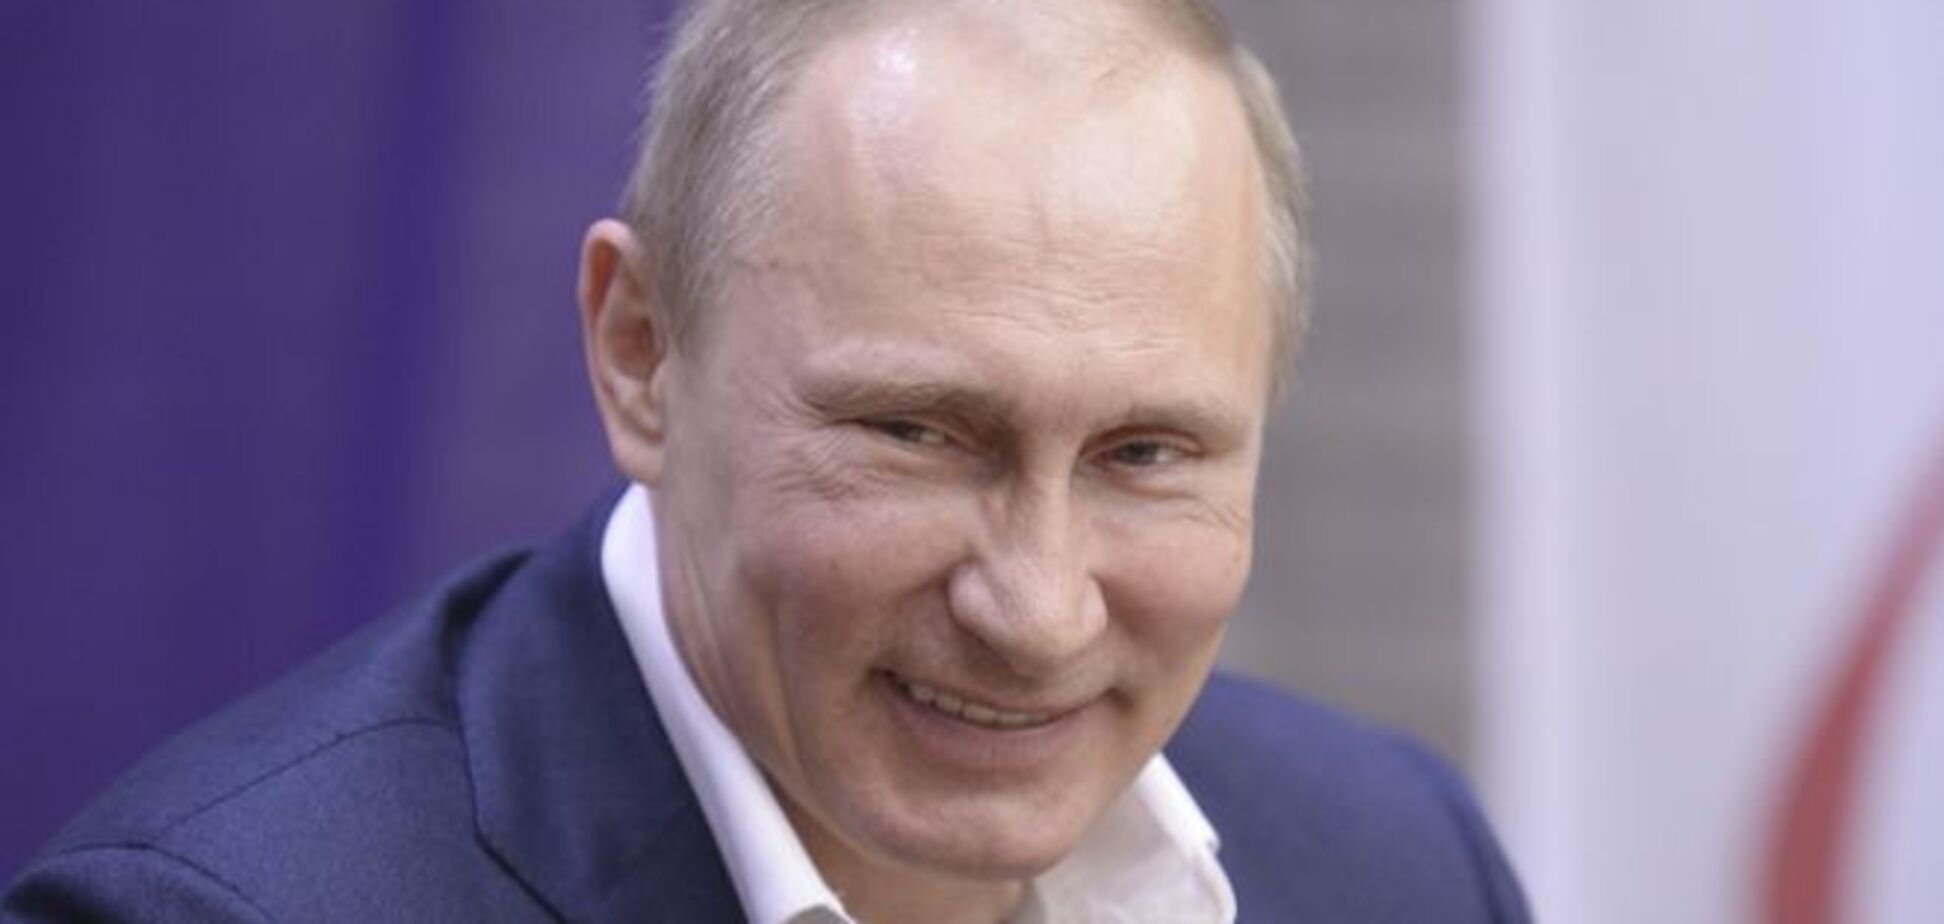 Западные политики бездействуют в отношении Путина из-за страха потерять власть - Каспаров